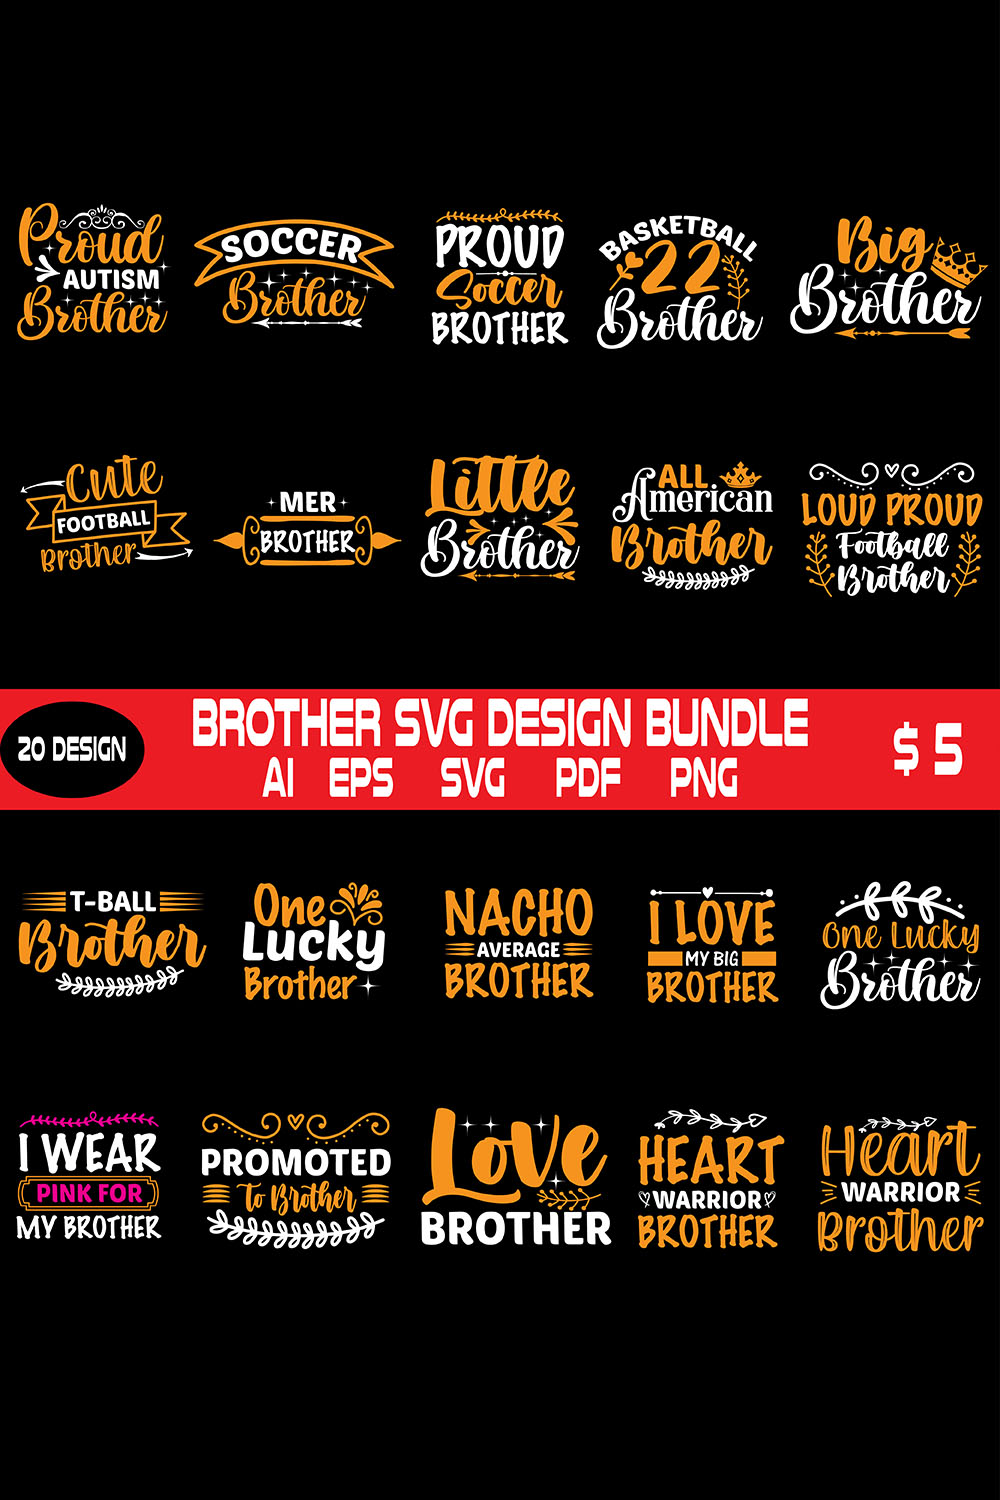 Brother Svg Design Bundle pinterest preview image.